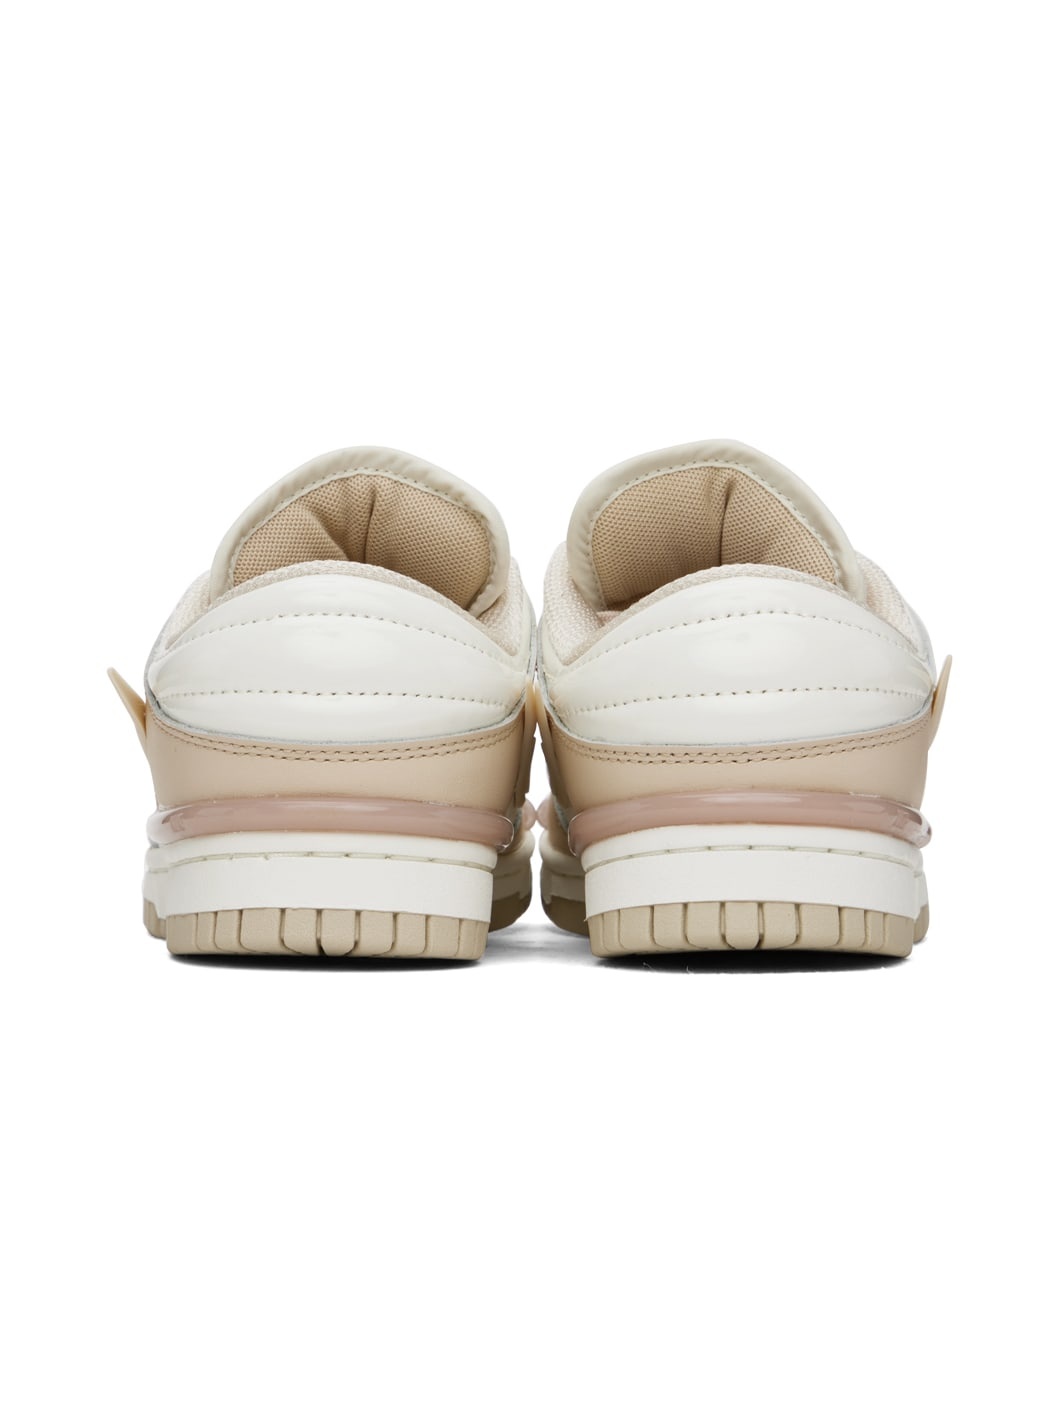 Beige & Off-White Dunk Low Twist Sneakers - 2